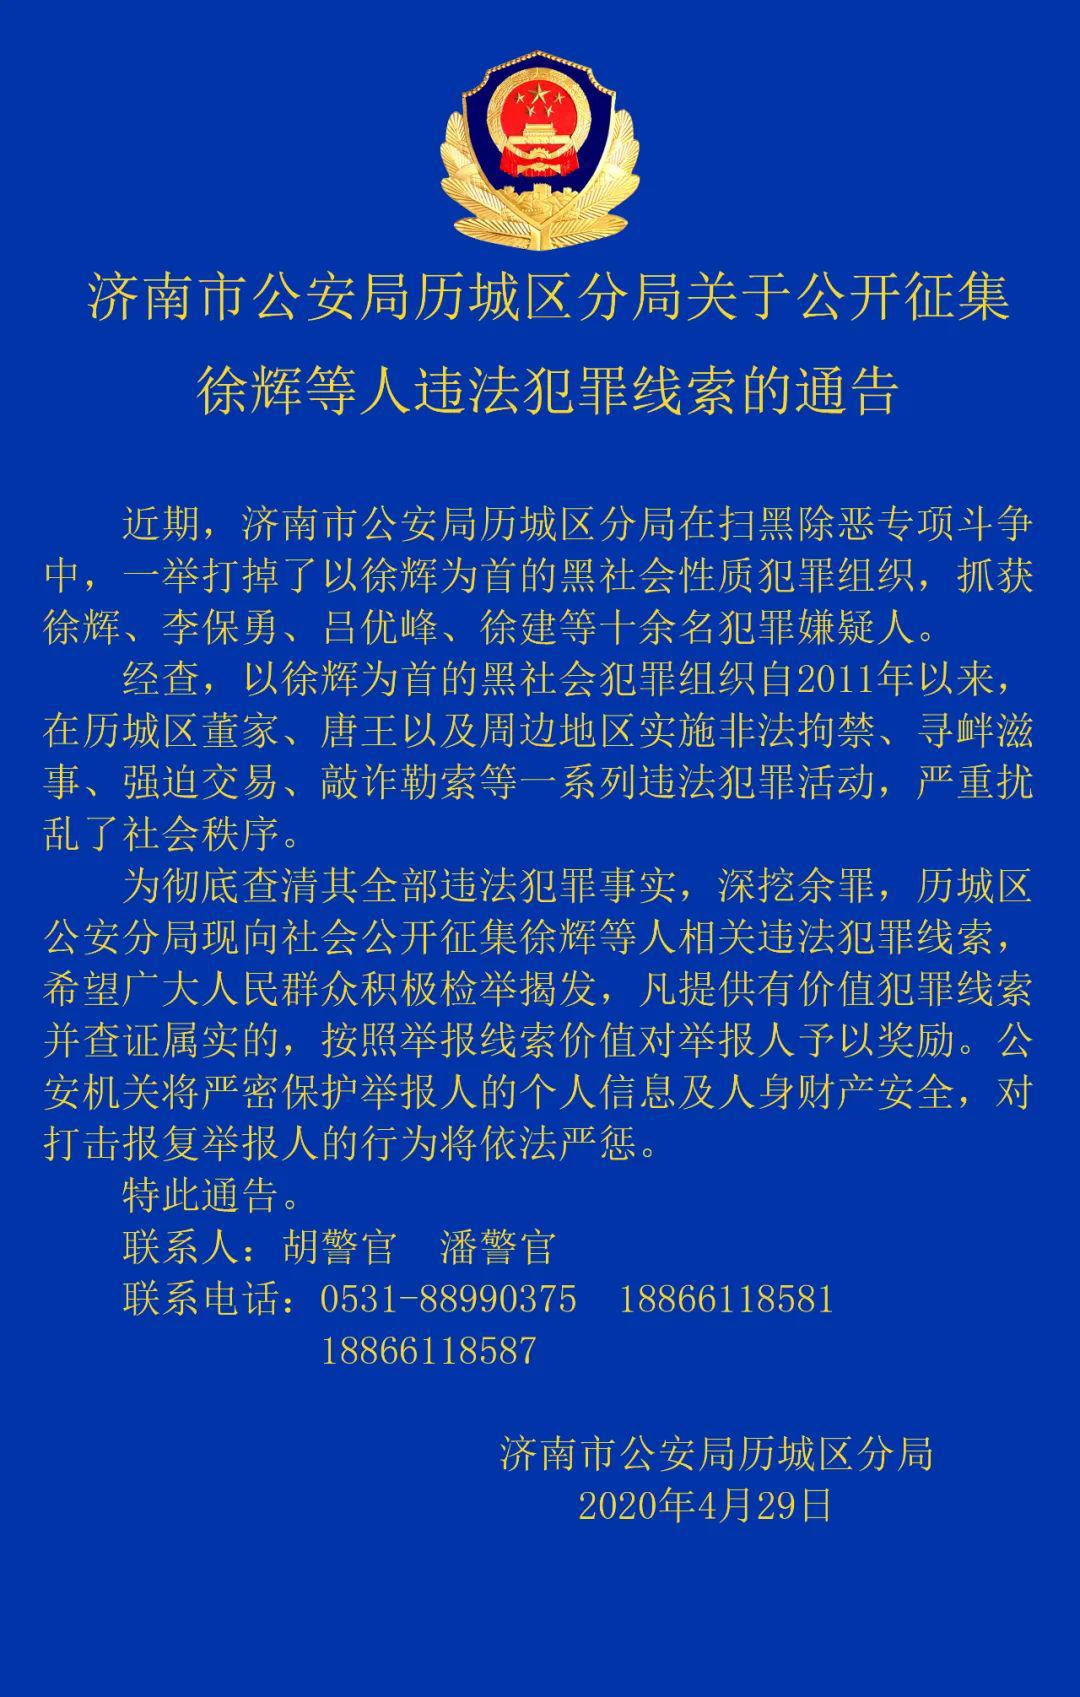 济南市公安局历城区分局关于公开征集徐辉等人违法犯罪线索的通告